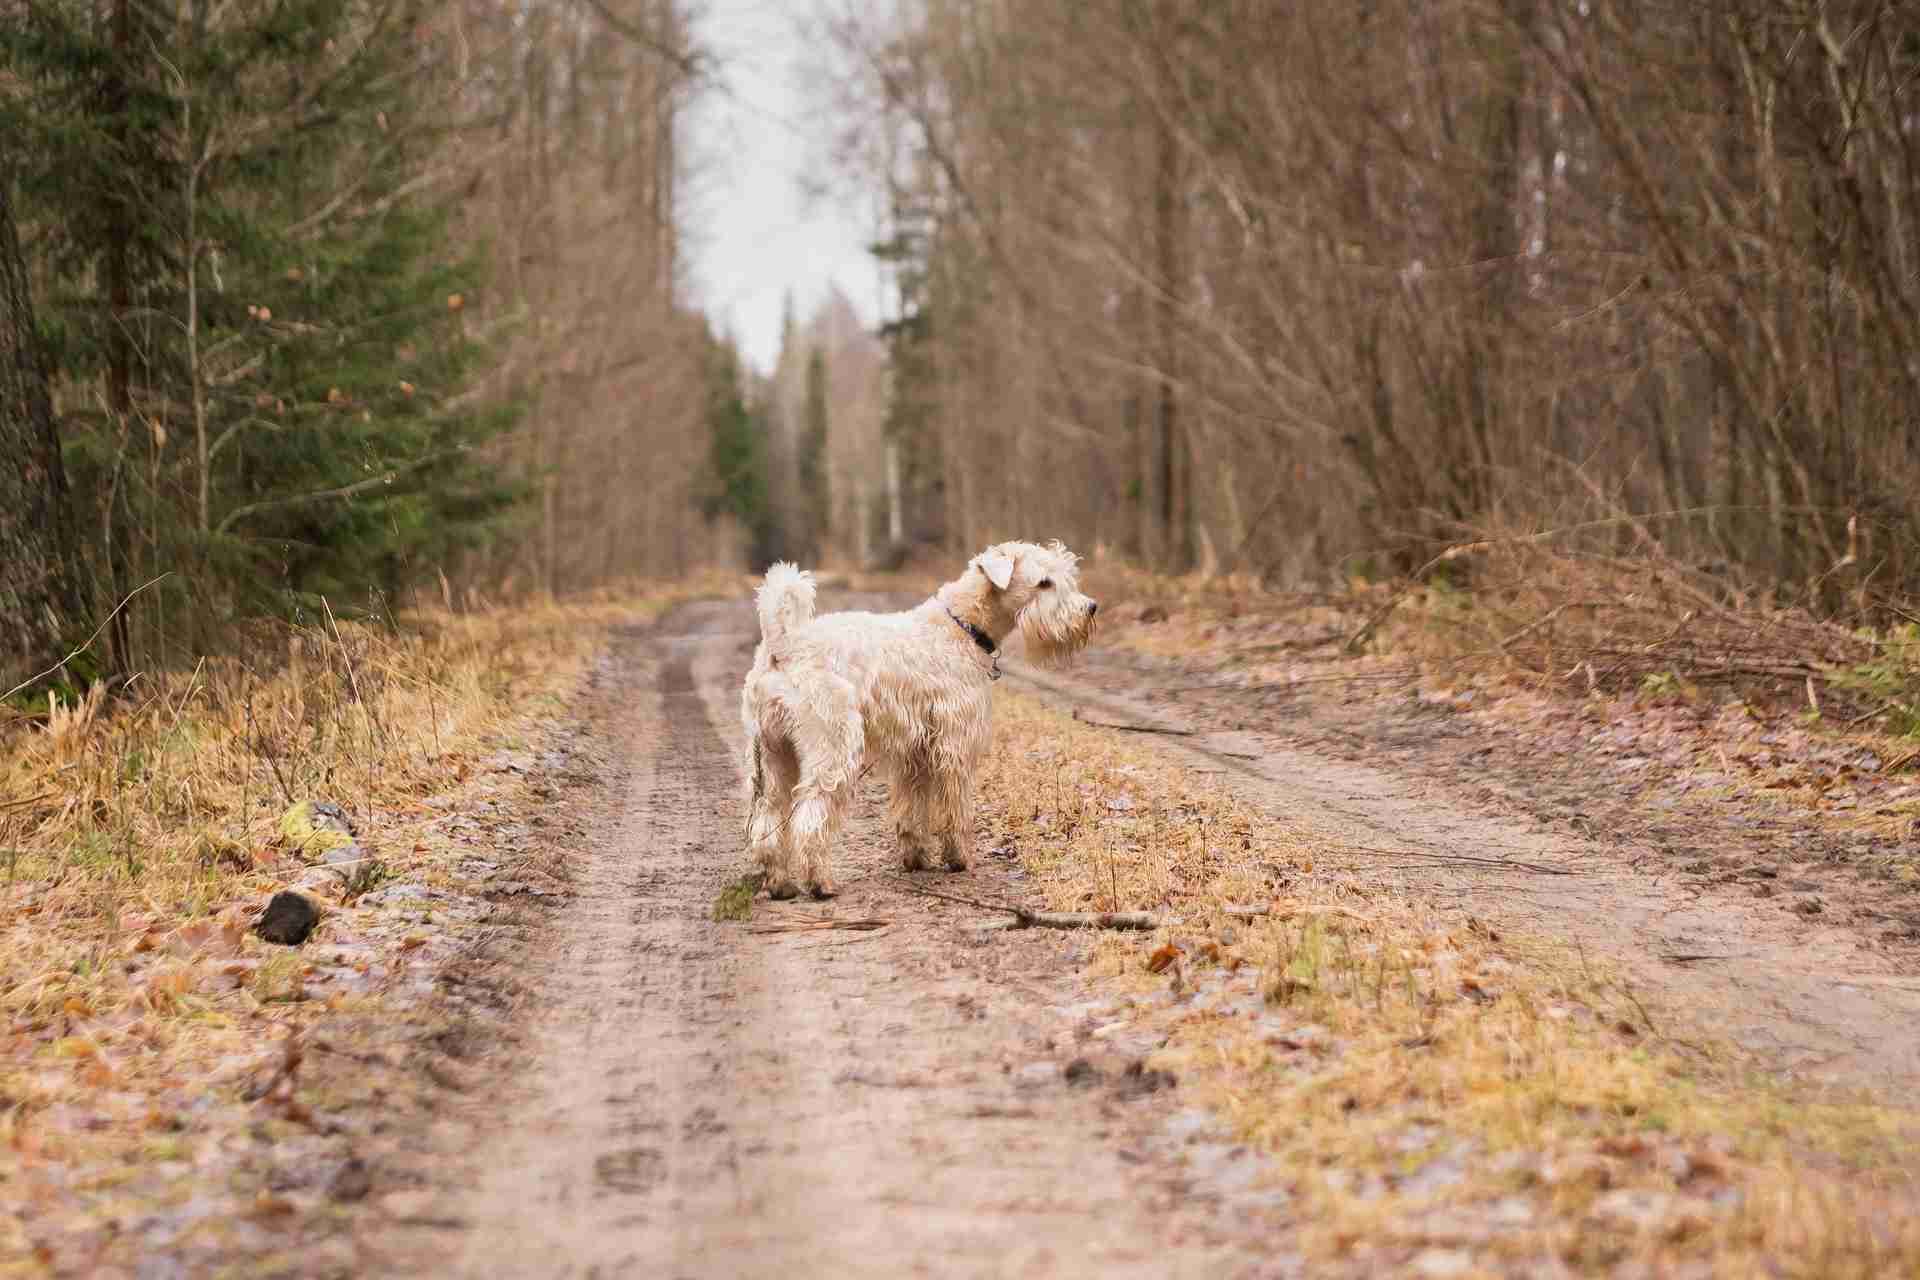 Tierarzt-Ecke: So kannst deinen Hund bei Kälte schützen